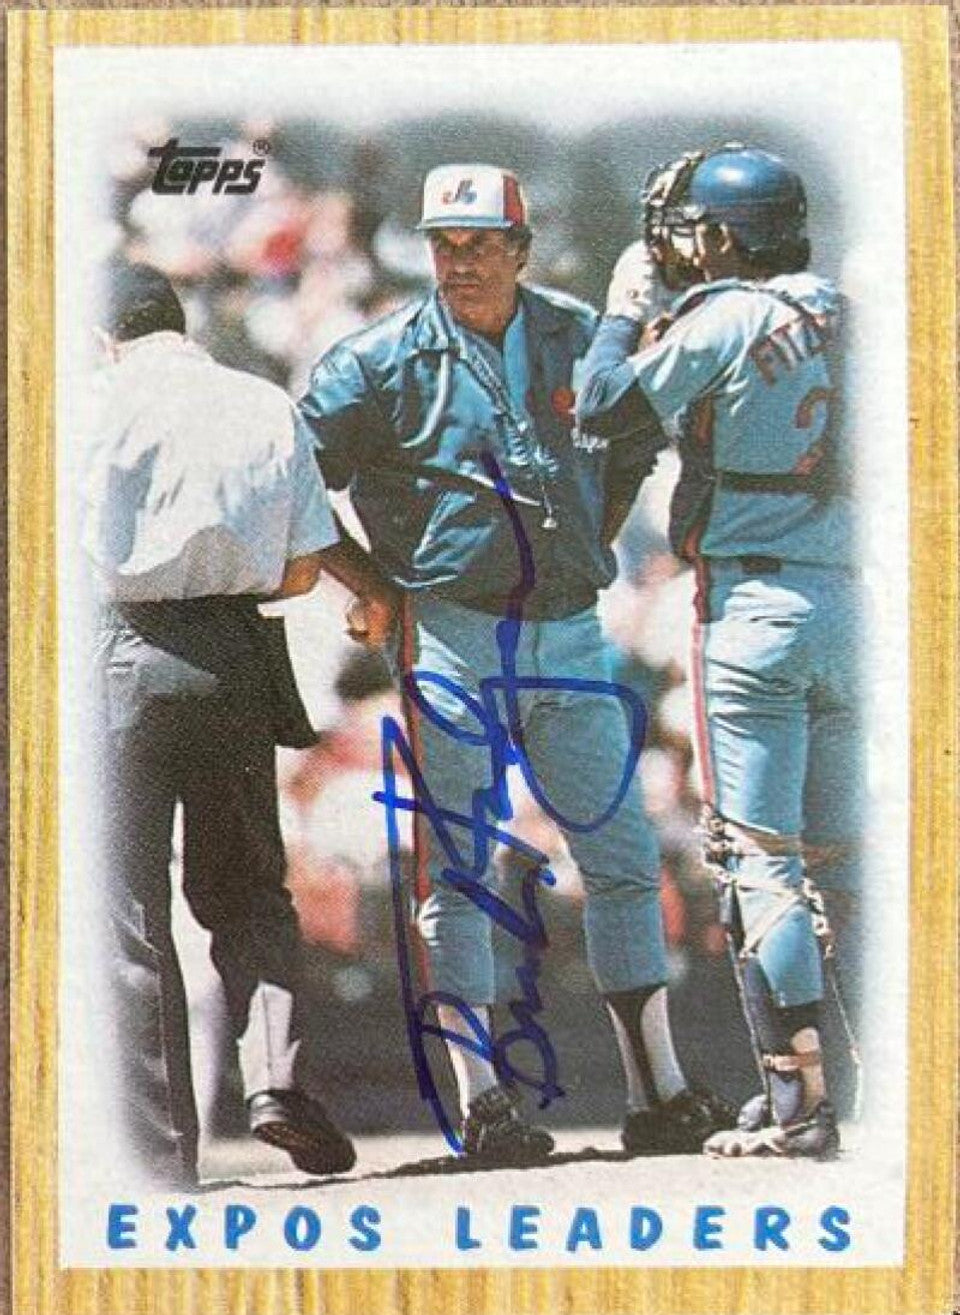 ボブ "バック" ロジャース サイン入り 1987 トップス リーダーズ ベースボール カード - モントリオール エクスポズ